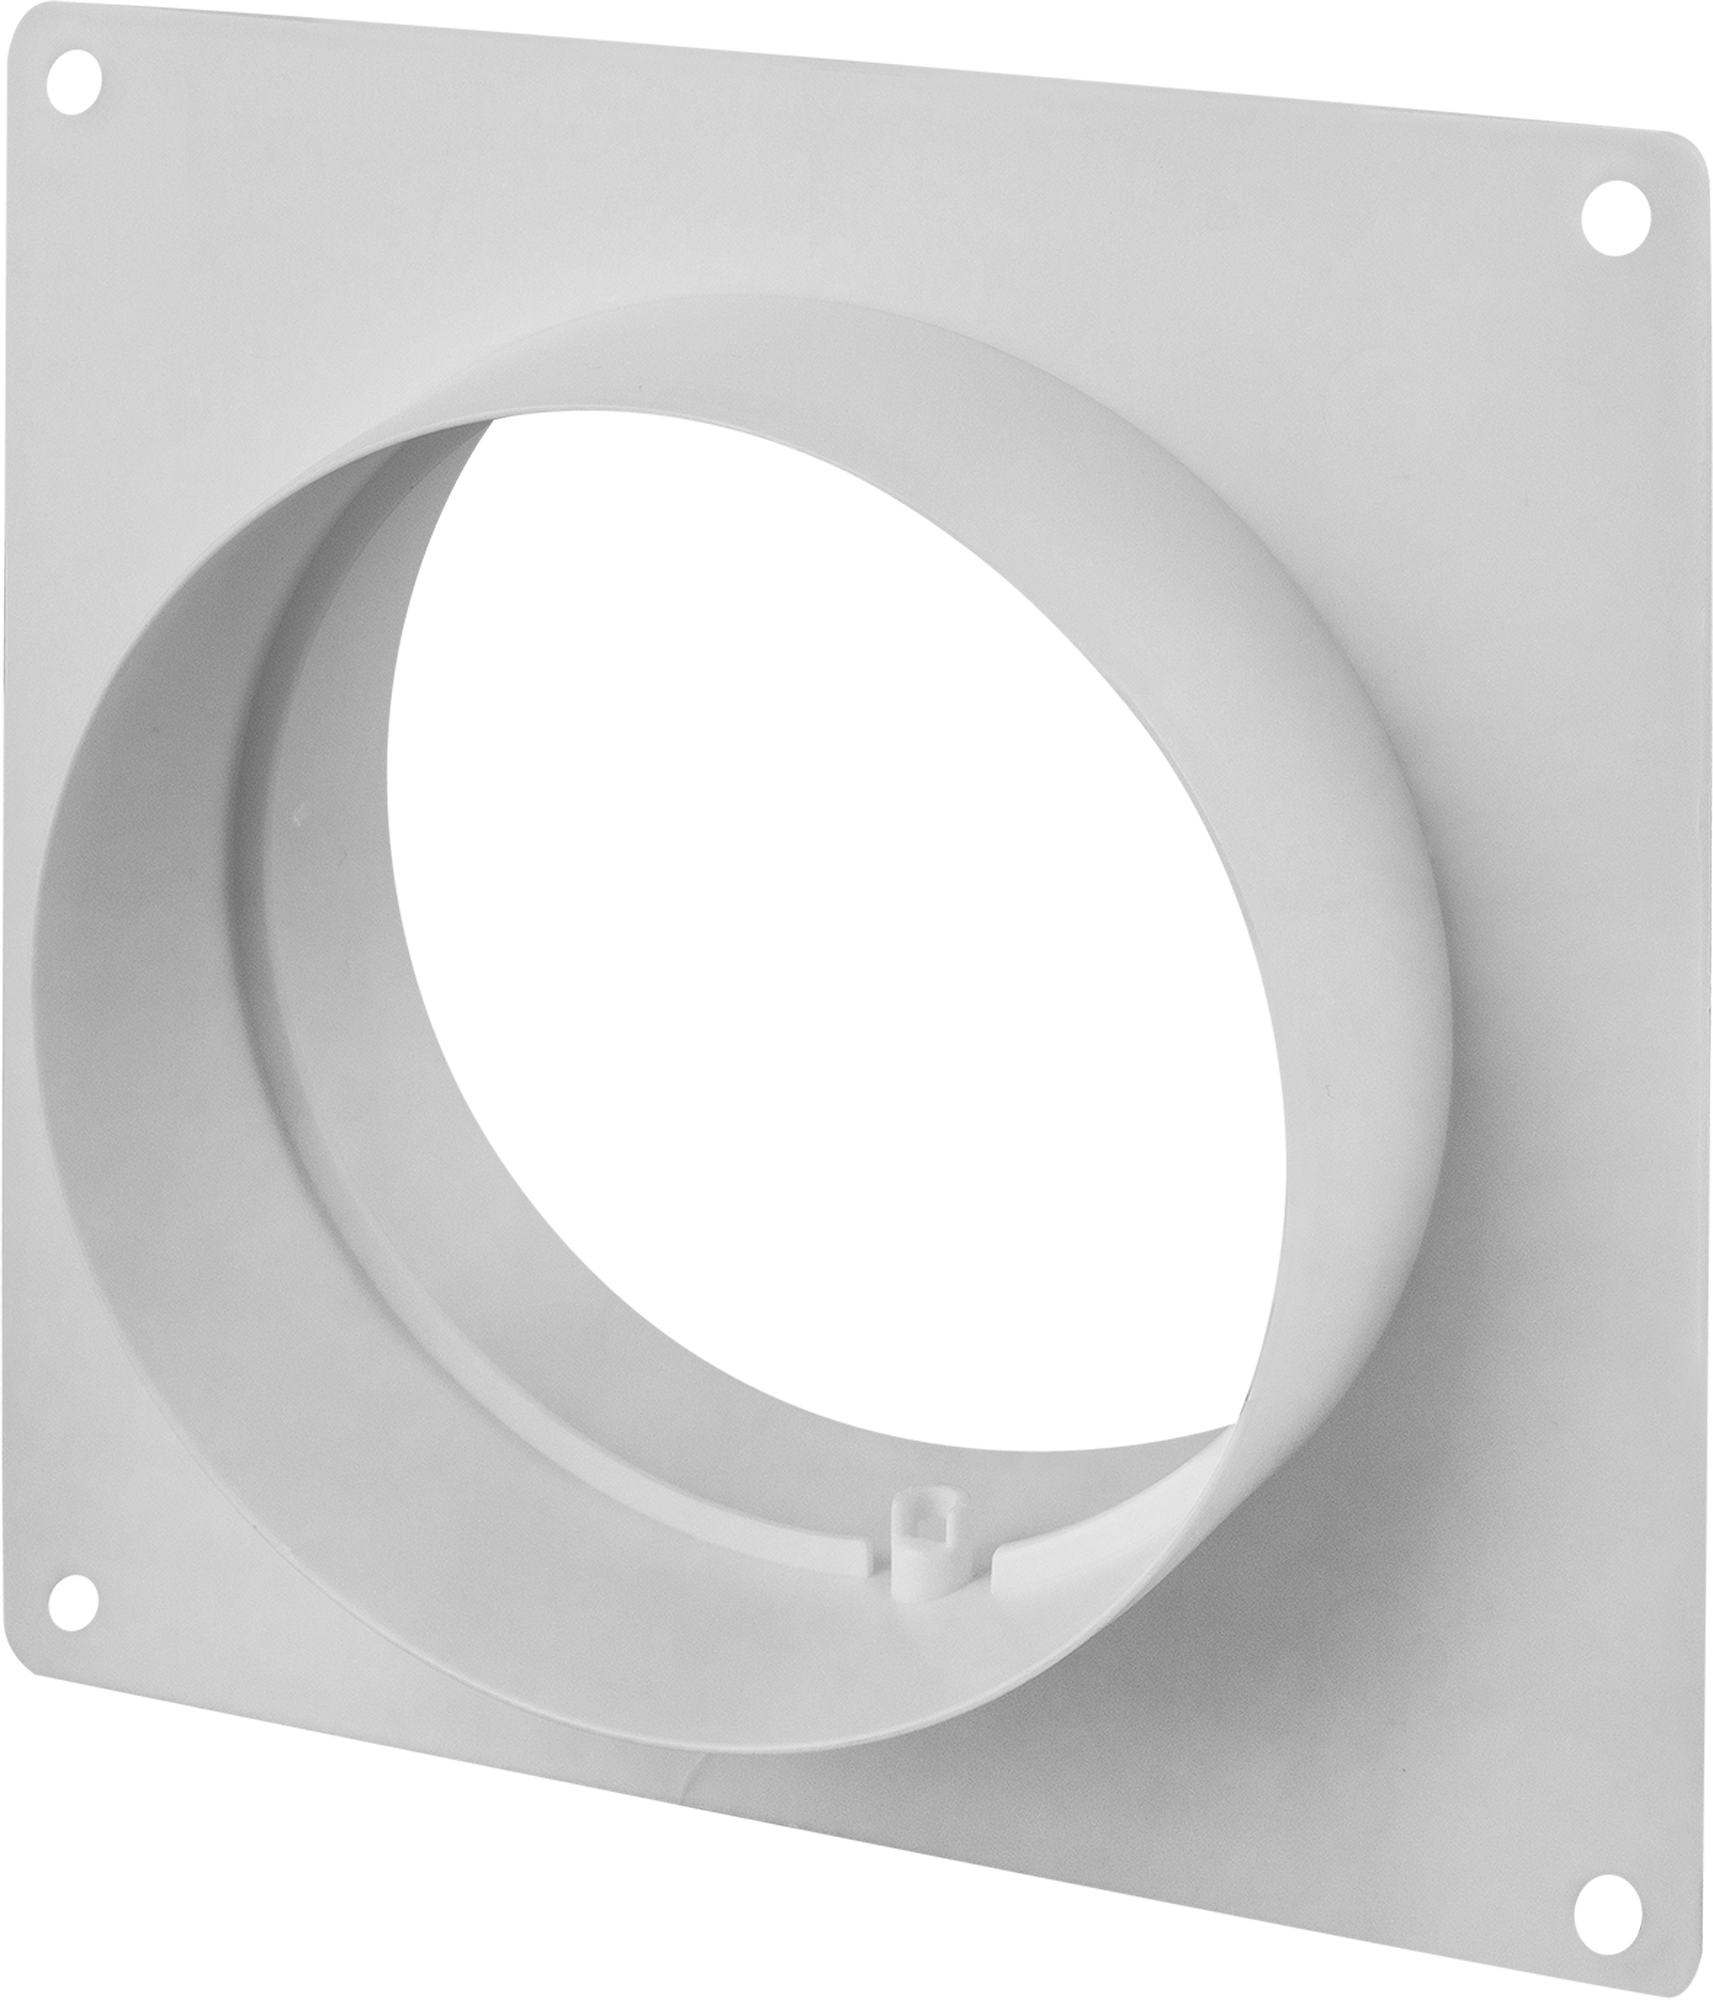 18155983 Пластина настенная с соединителем для круглых воздуховодов D125 мм пластик STLM-0009707 EQUATION